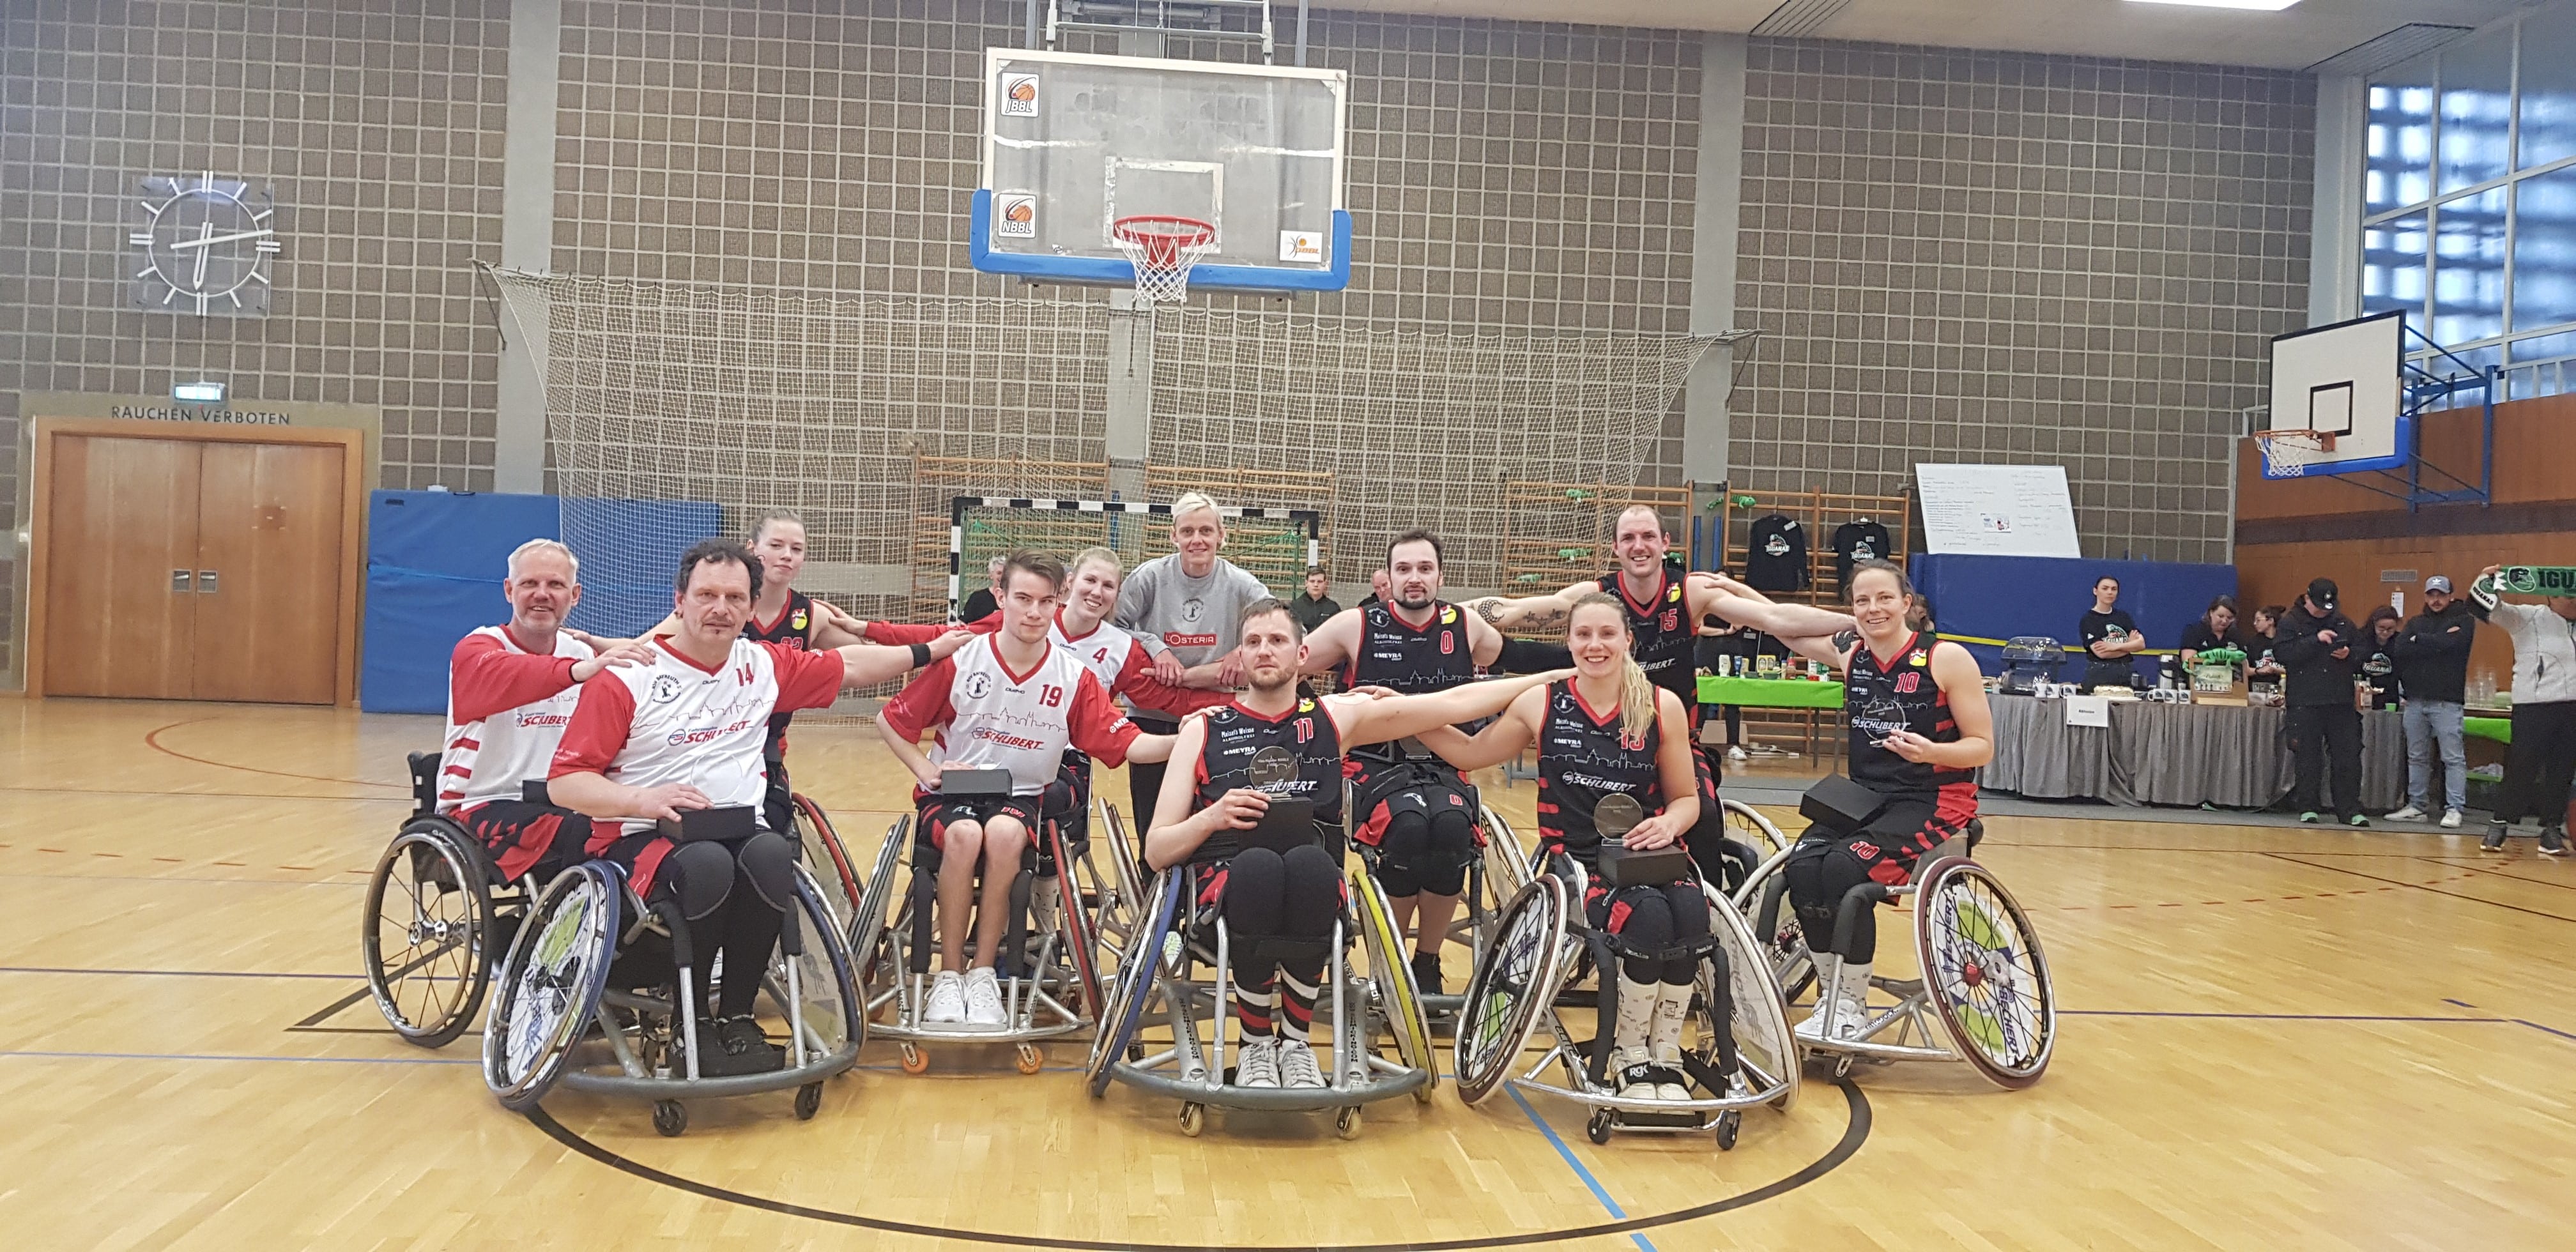 Gruppenfoto der Rollstuhl-Basketballspieler des RSV Bayreuth in Turnhalle